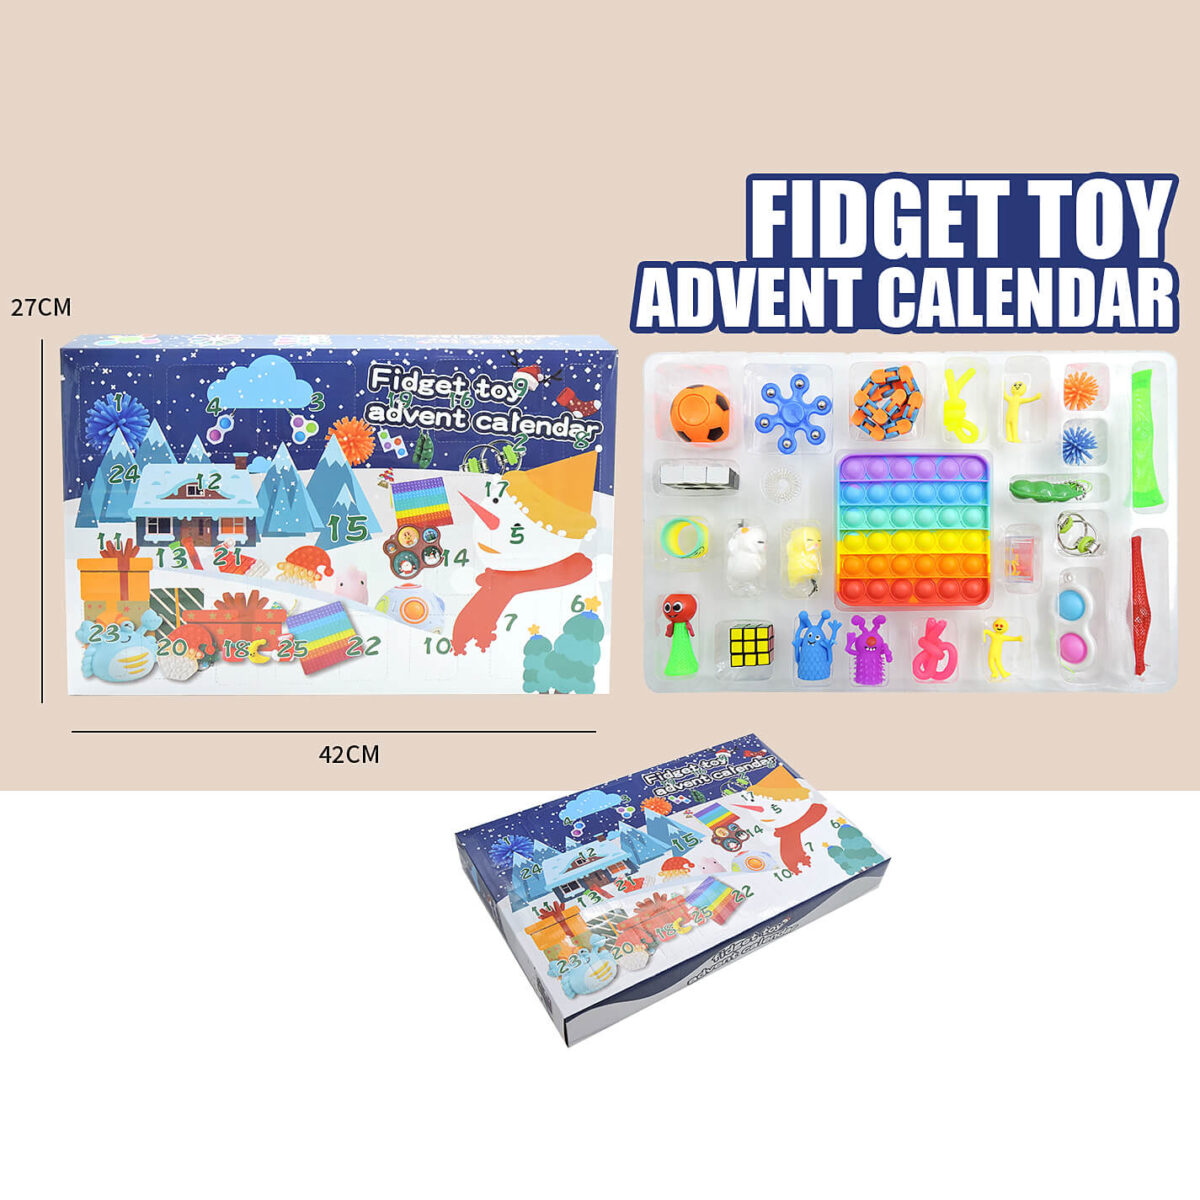 Wholesale fidget toy advent calendar 010S